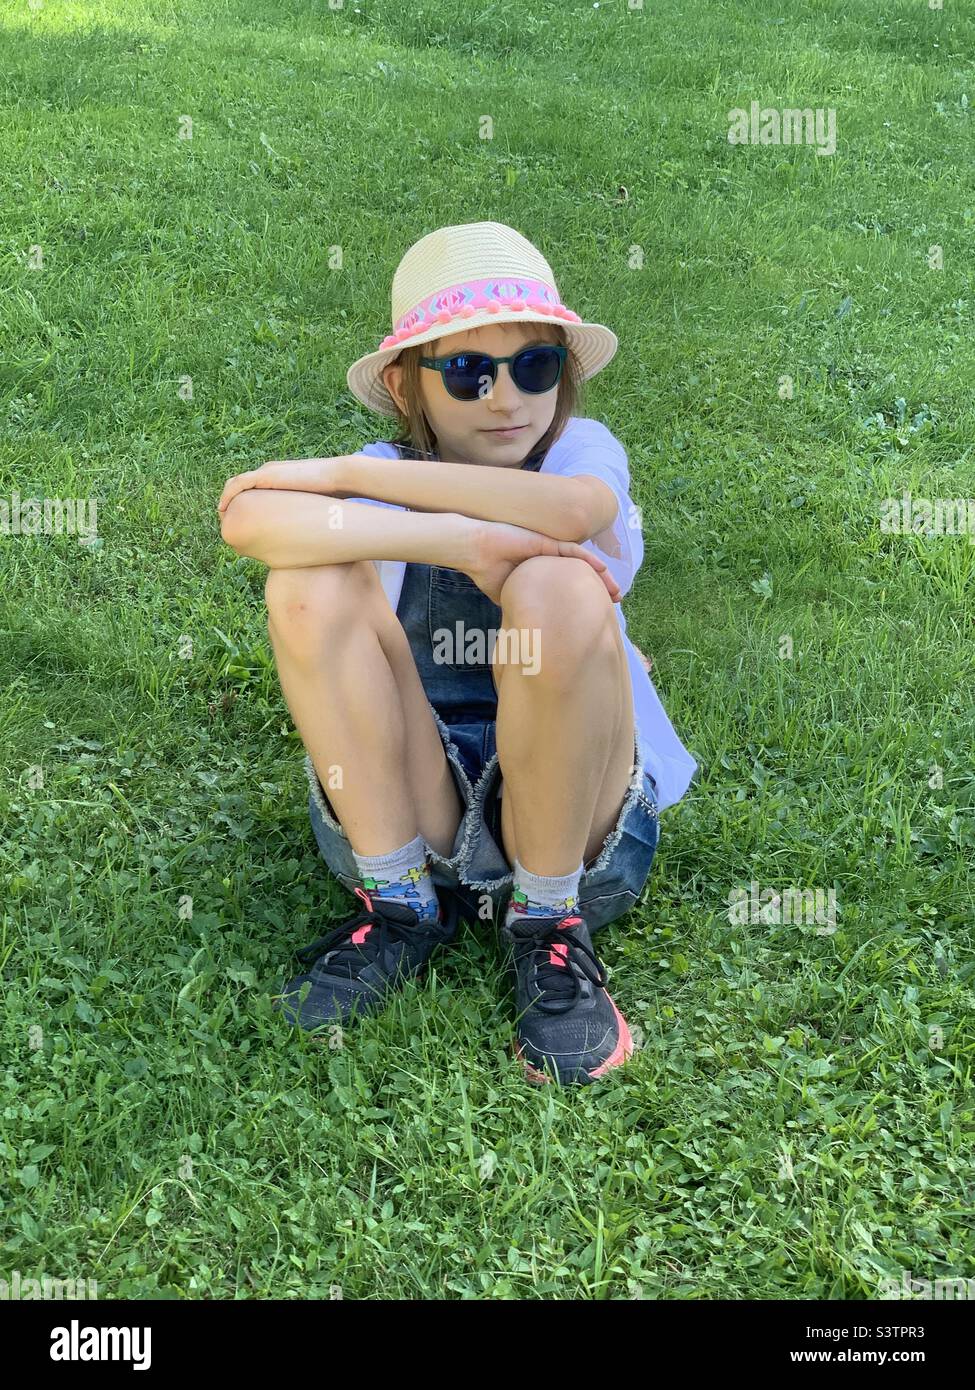 Fille avec chapeau errant assis sur l'herbe. Banque D'Images